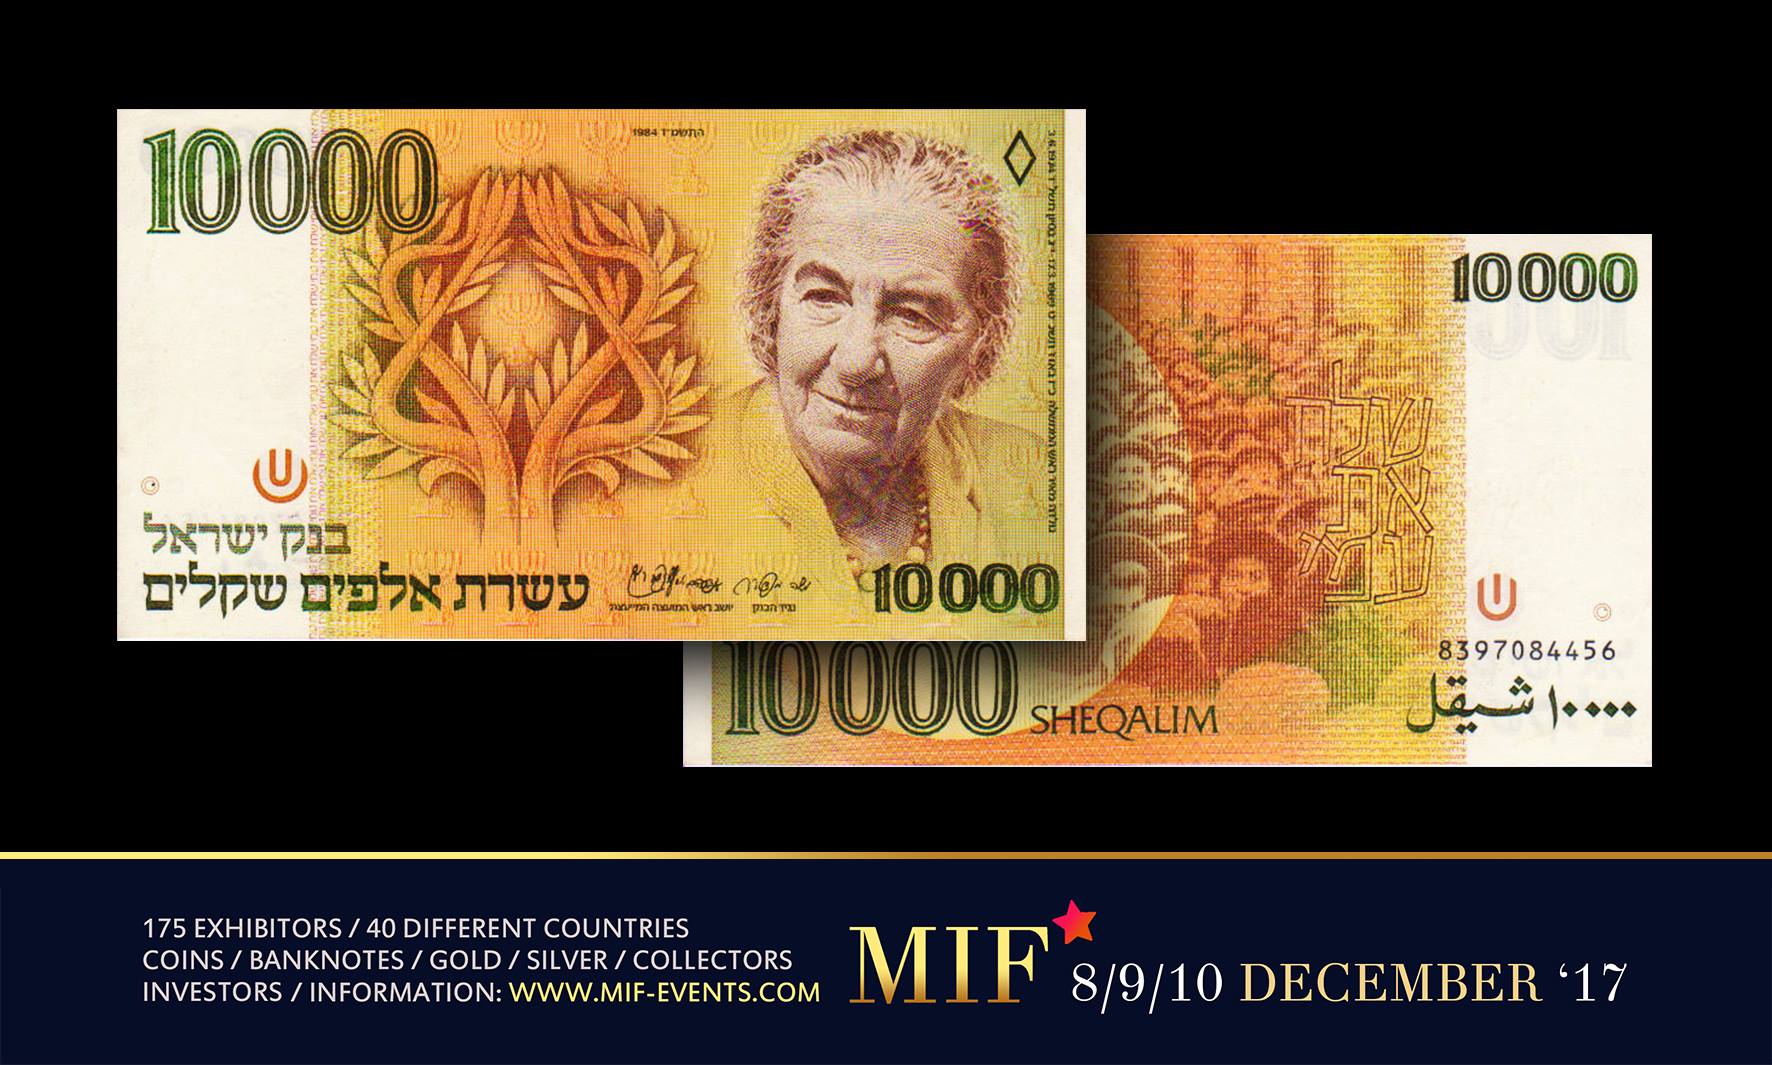 ISRAEL 70 New Shekels 2018 70 Years of Israel FANTASY Banknote